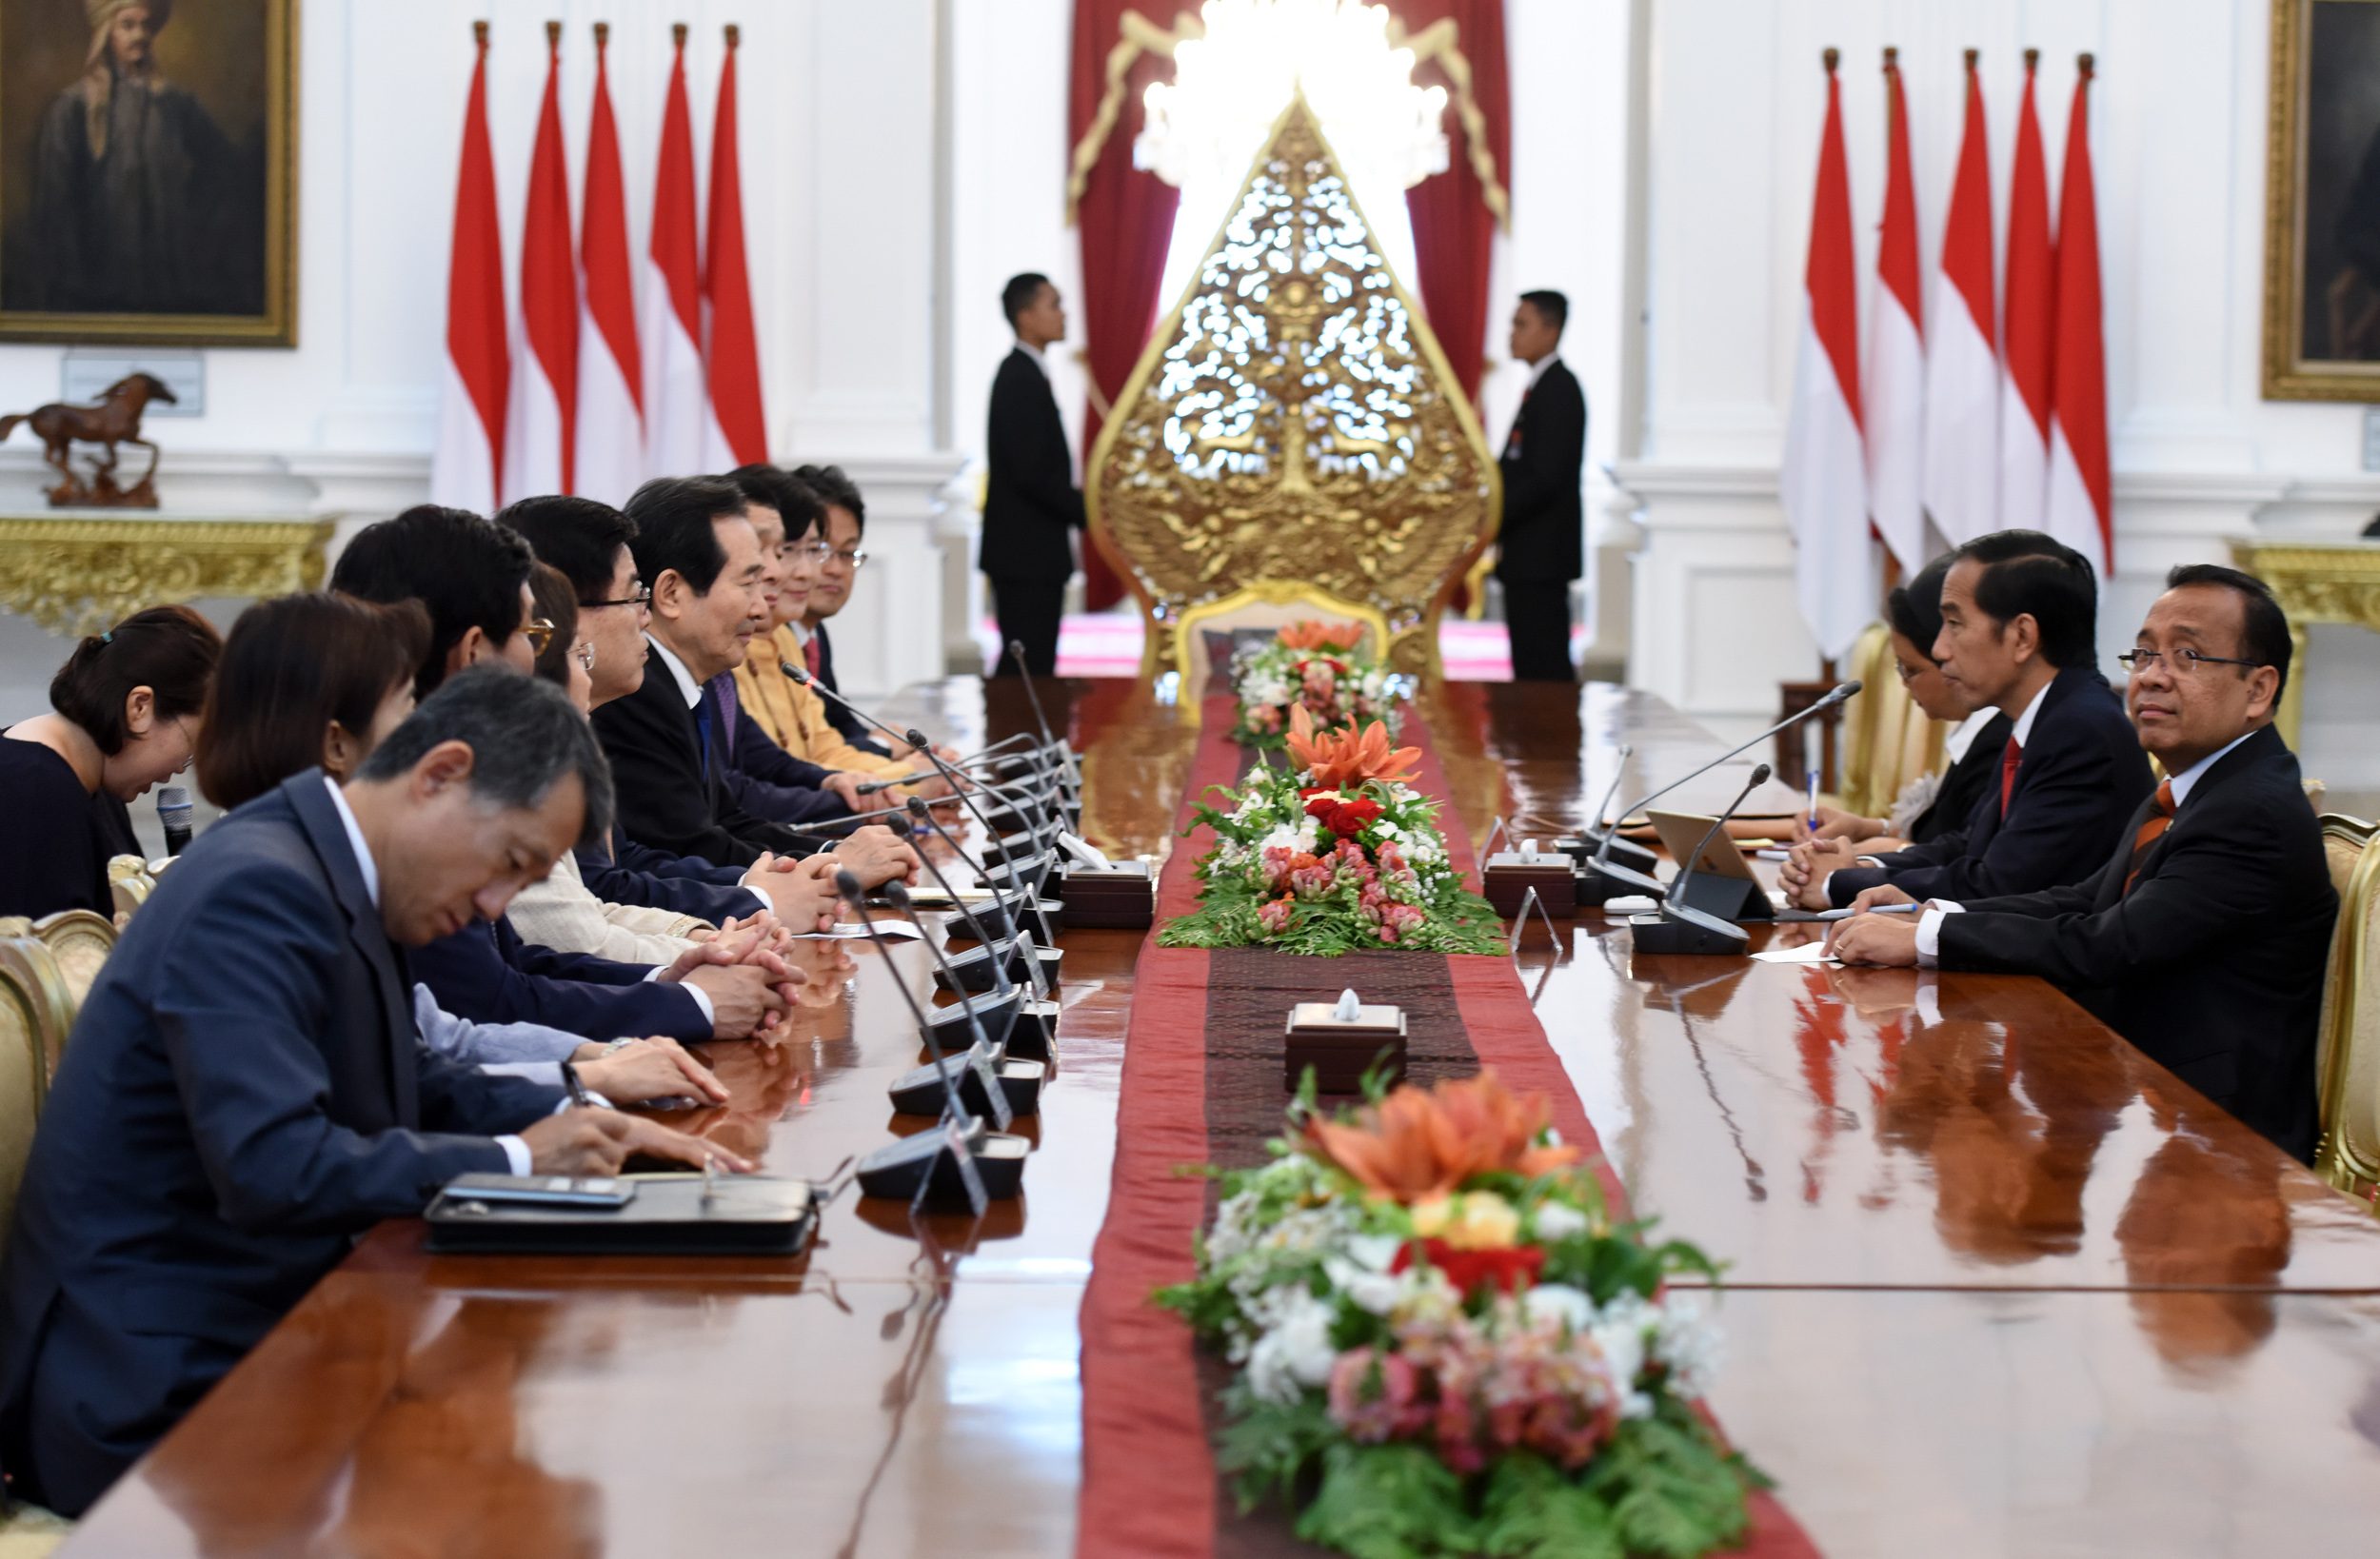 Presiden Jokowi menerima kunjungan kehormatan 9 anggota Parlemen Republik Korea di Istana Merdeka, pada 12 Januari 2017. Foto dari Setkab.go.id 